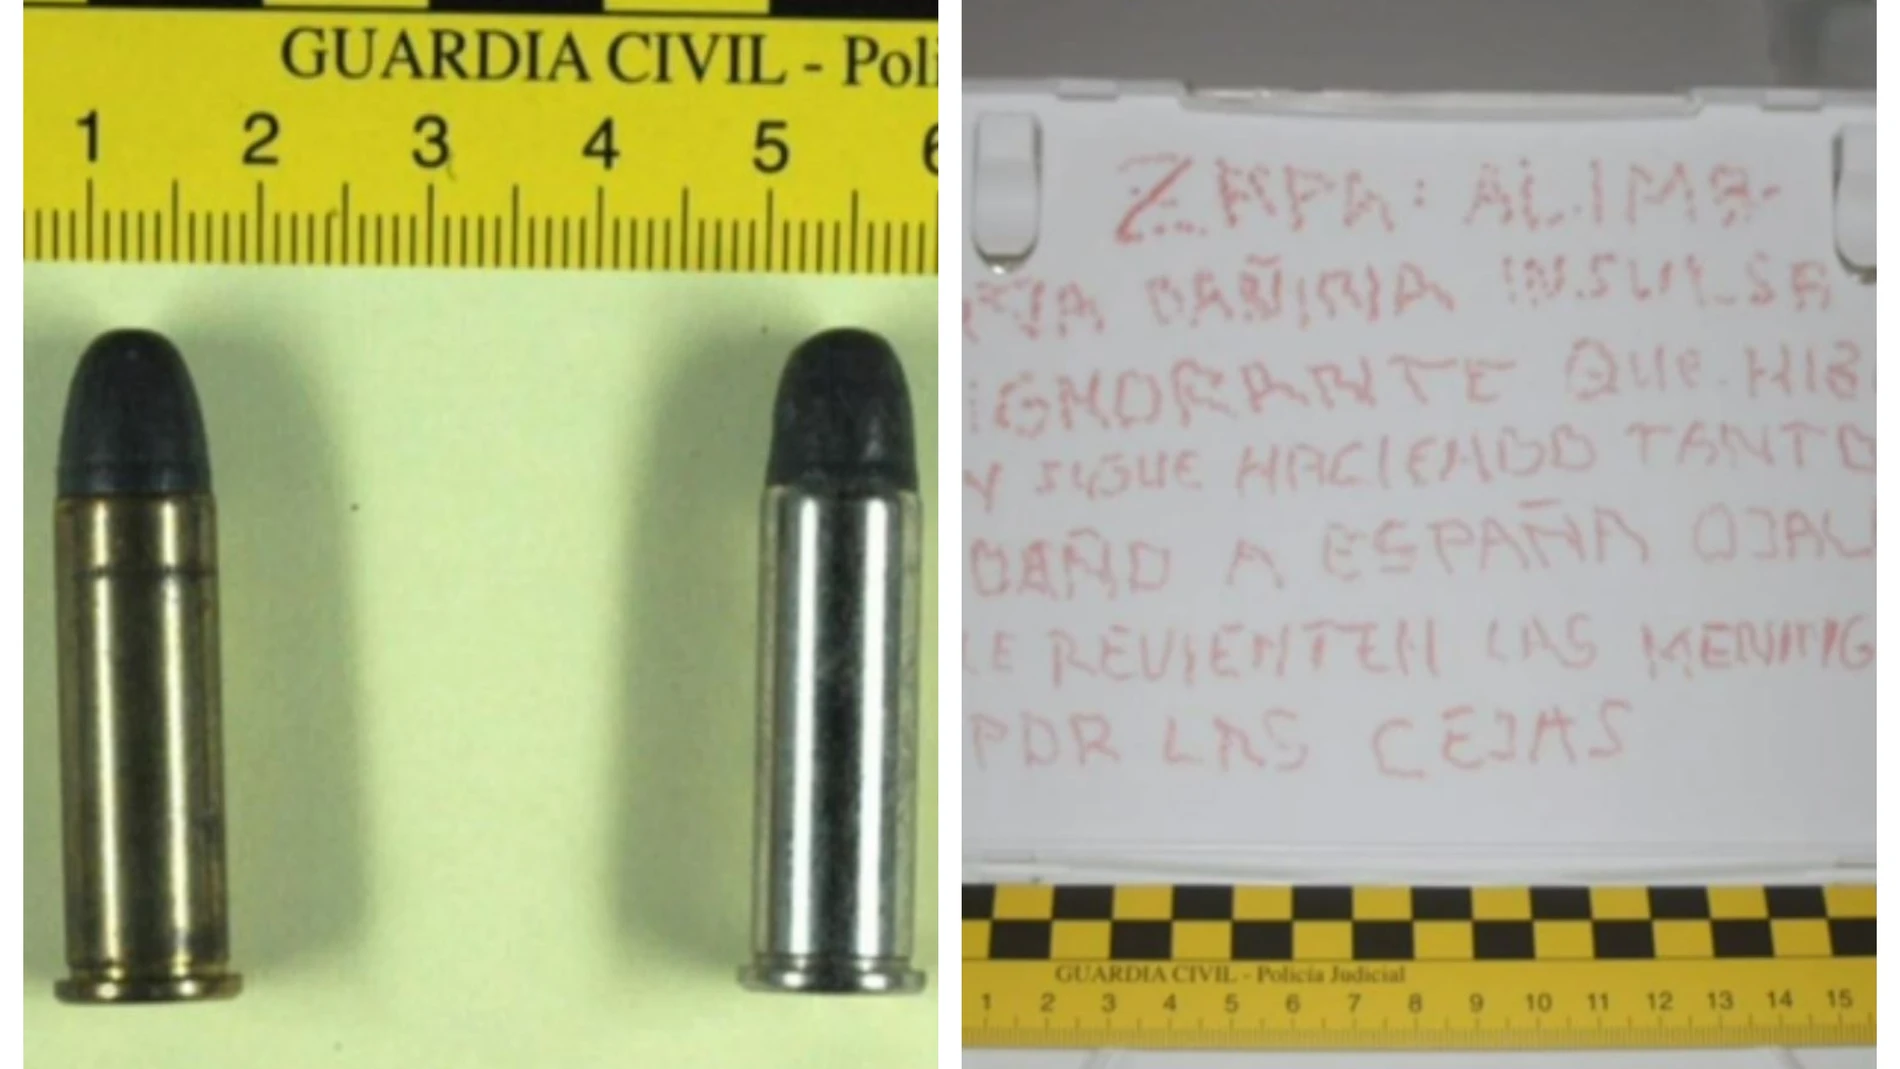 Carta enviada a José Luis Rodríguez Zapatero, que incluye una nota y dos balas del calibre 38